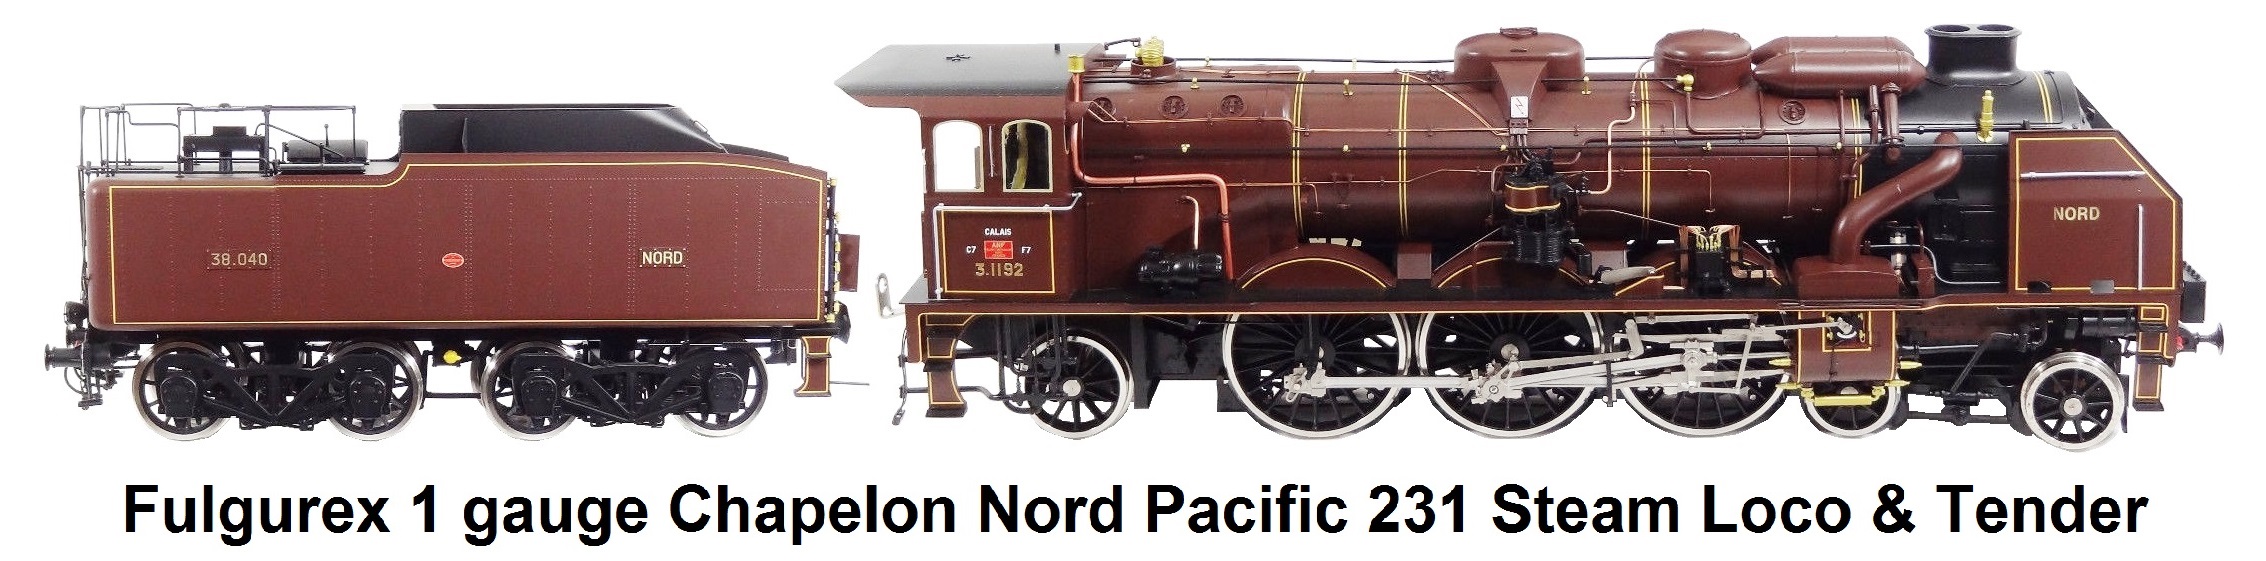 Fulgurex Gauge 1 Dampflok Chapelon Nord Pacific 231 Steam Engine & Tender